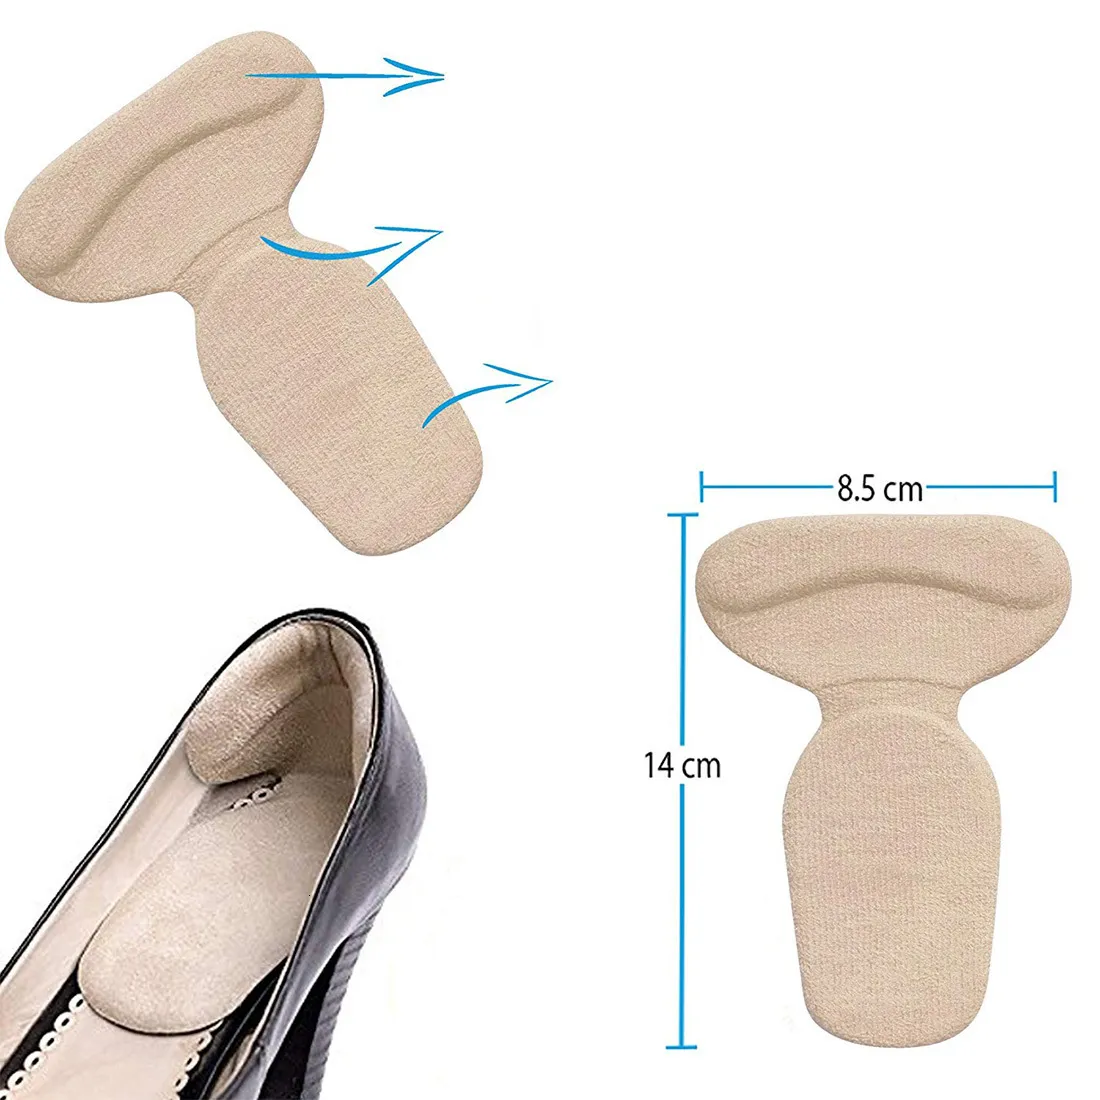 Запчатки для обуви аксессуары антислипа для защиты от подушки для подготовки кноки не скользкие стельки женщин.